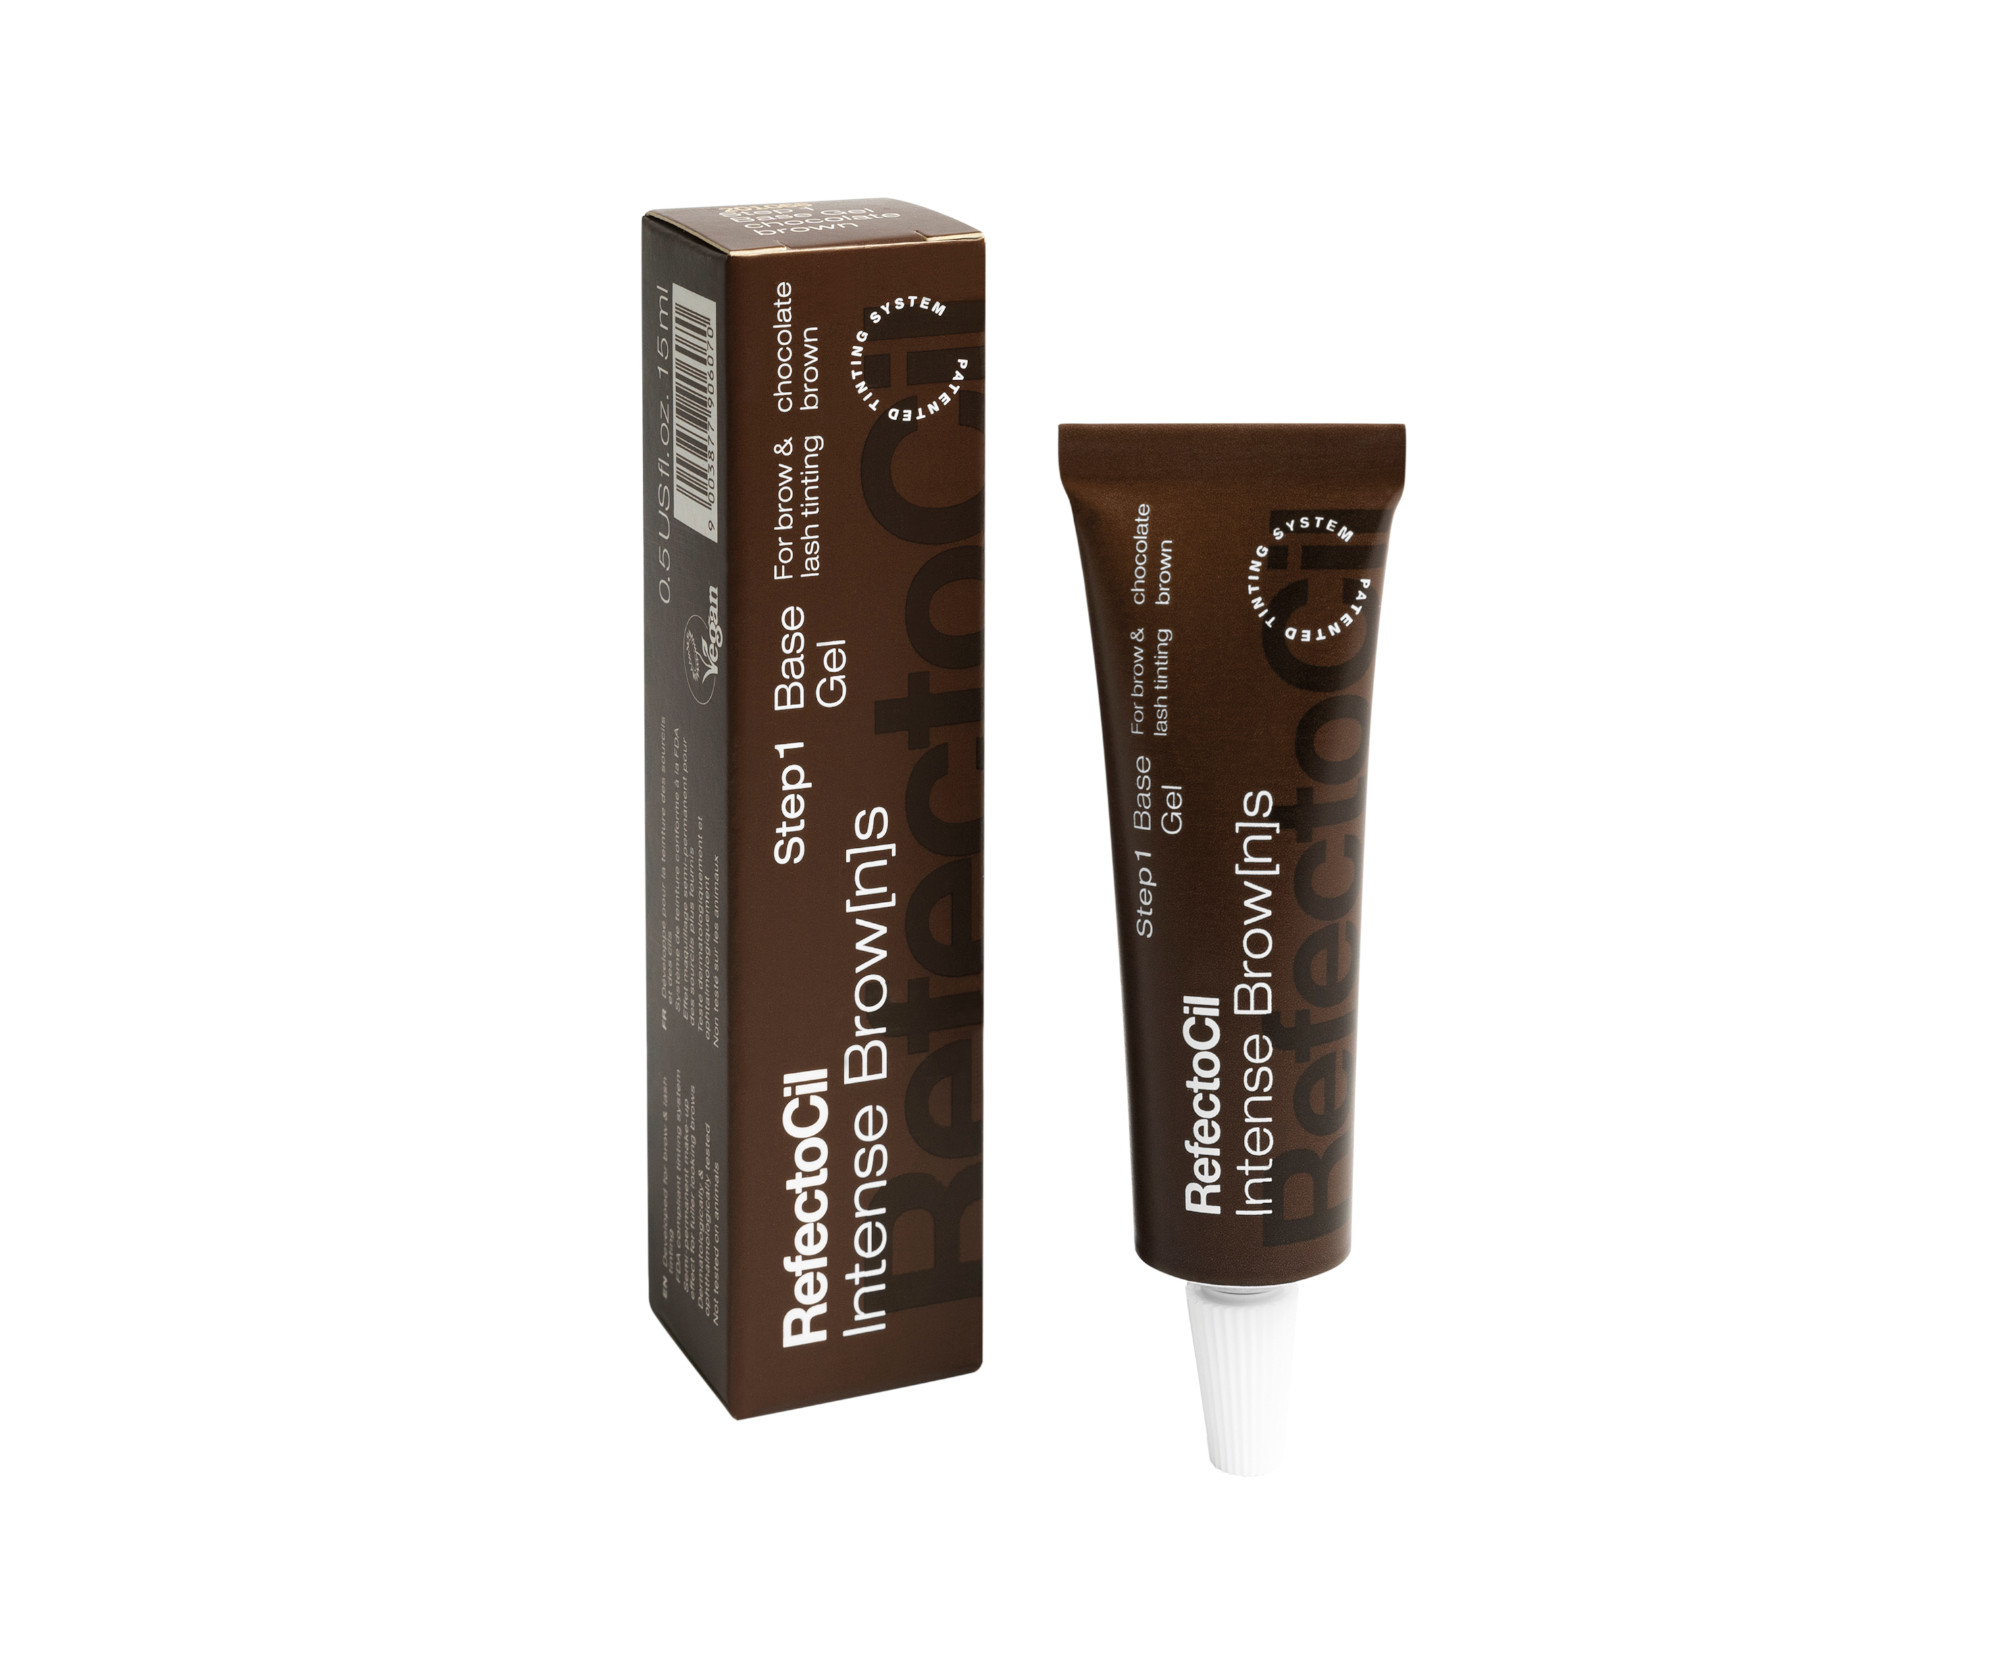 Gelová barva na řasy a obočí RefectoCil Intense Browns Base Gel - čokoládově hnědá, 15 ml (3250) + dárek zdarma